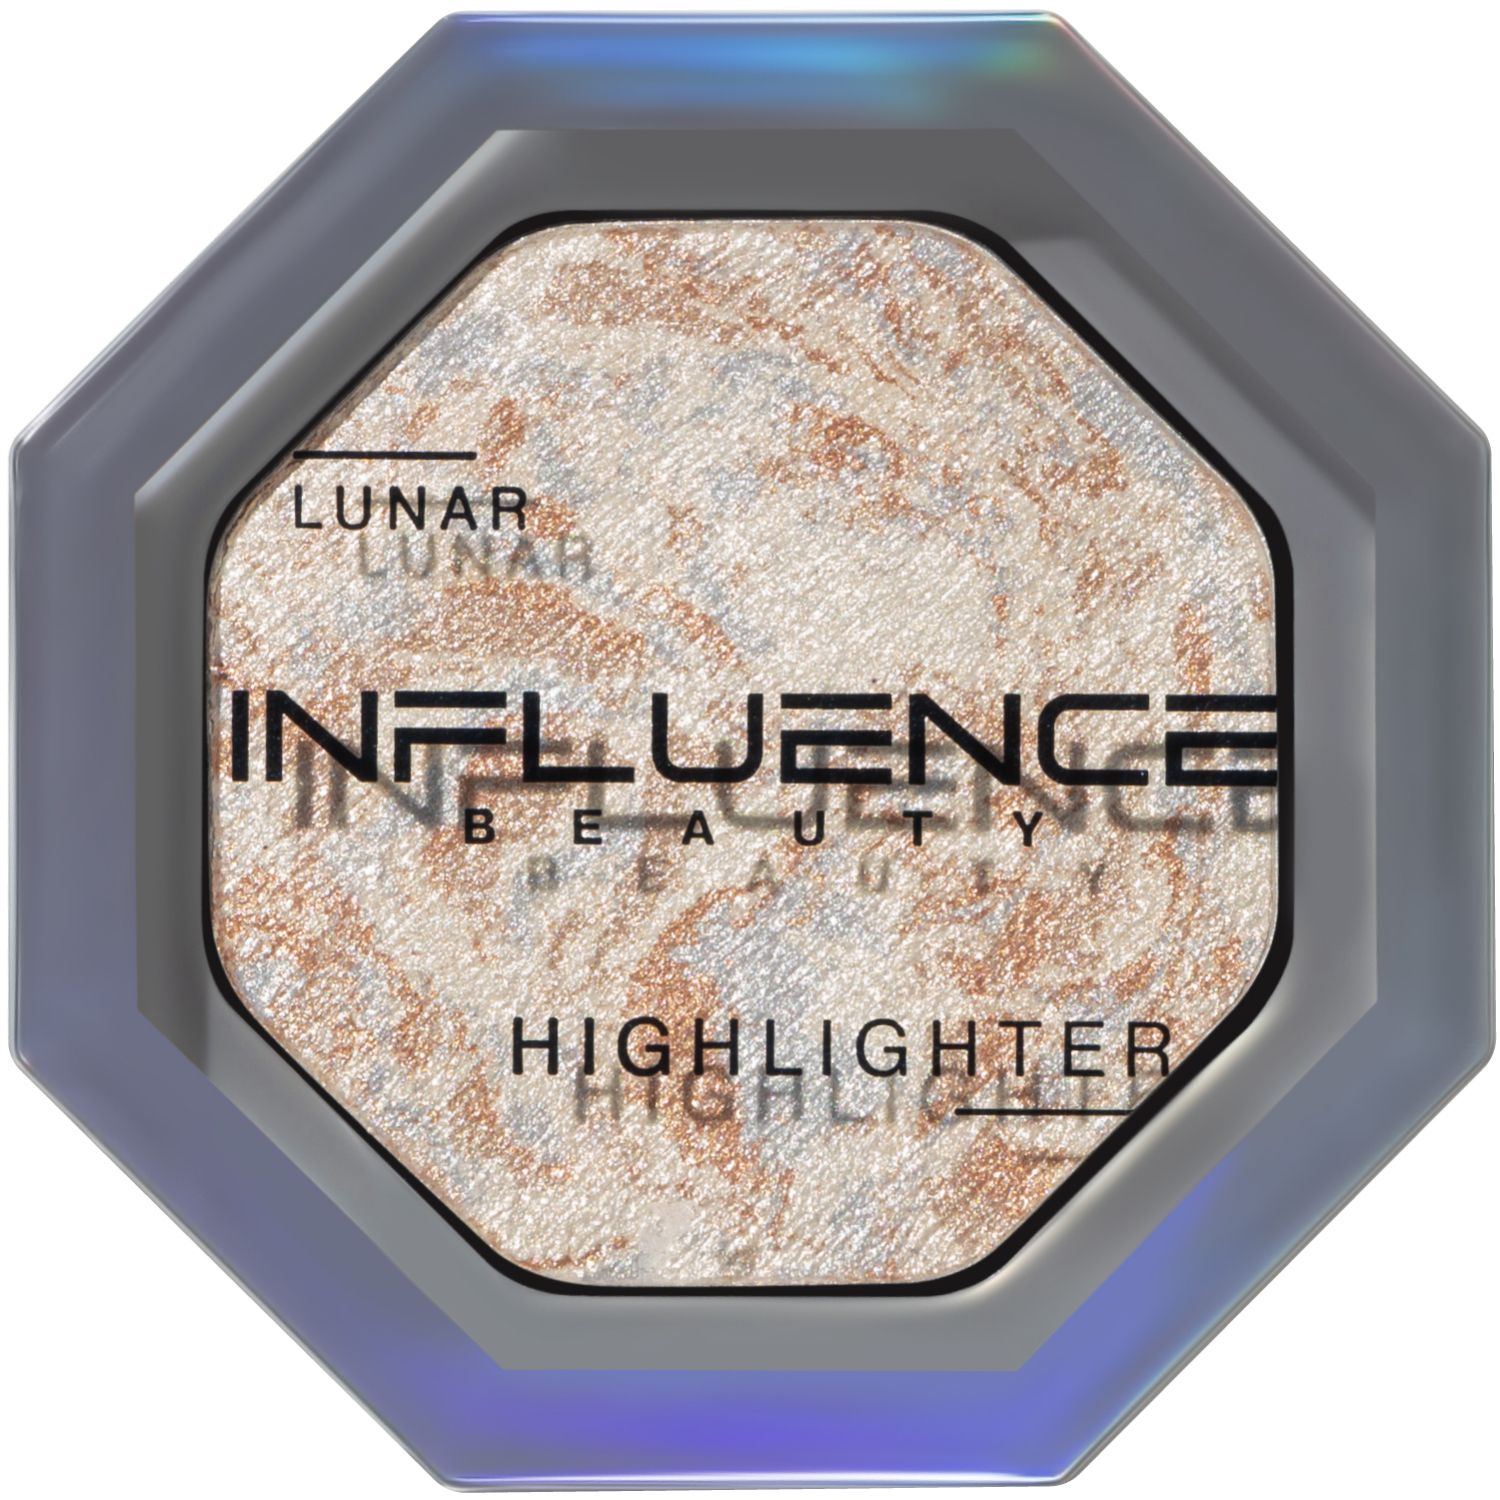 Хайлайтер Influence Beauty LUNAR , эффект деликатного сияния, серебряный, 4,8 г influence beauty хайлайтер с микроскопическими частицами бриллиантов illuminati highlighter